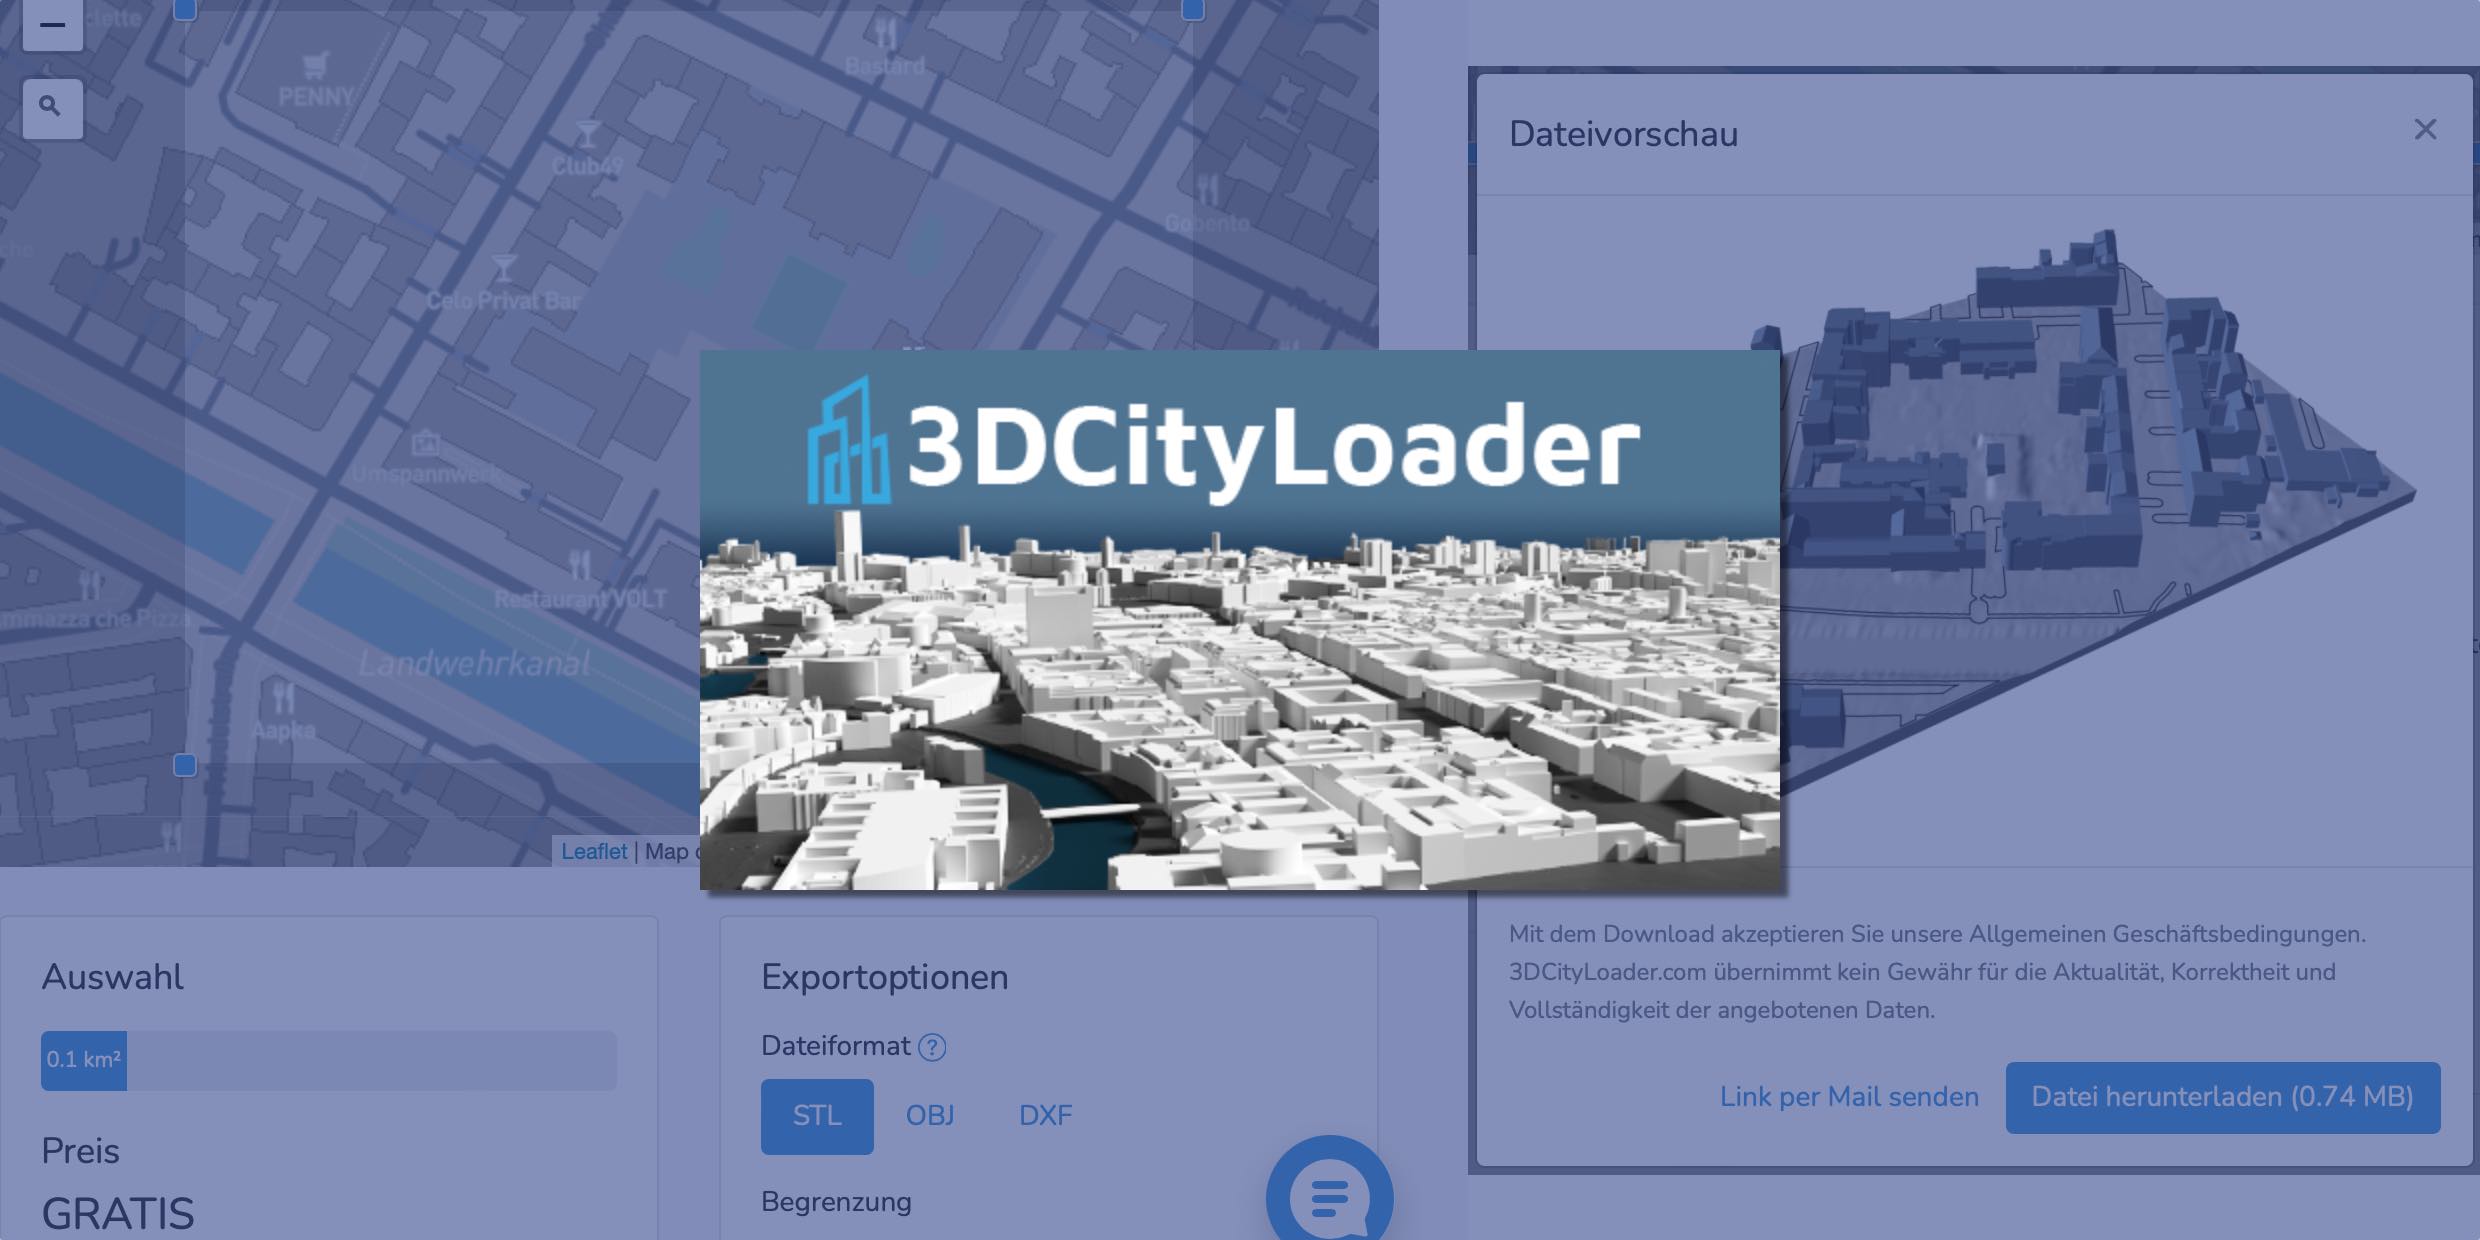 Illustration zur App „3DCityLoader“, mit 3D-Modell der Stadt Berlin und Screenshots der App